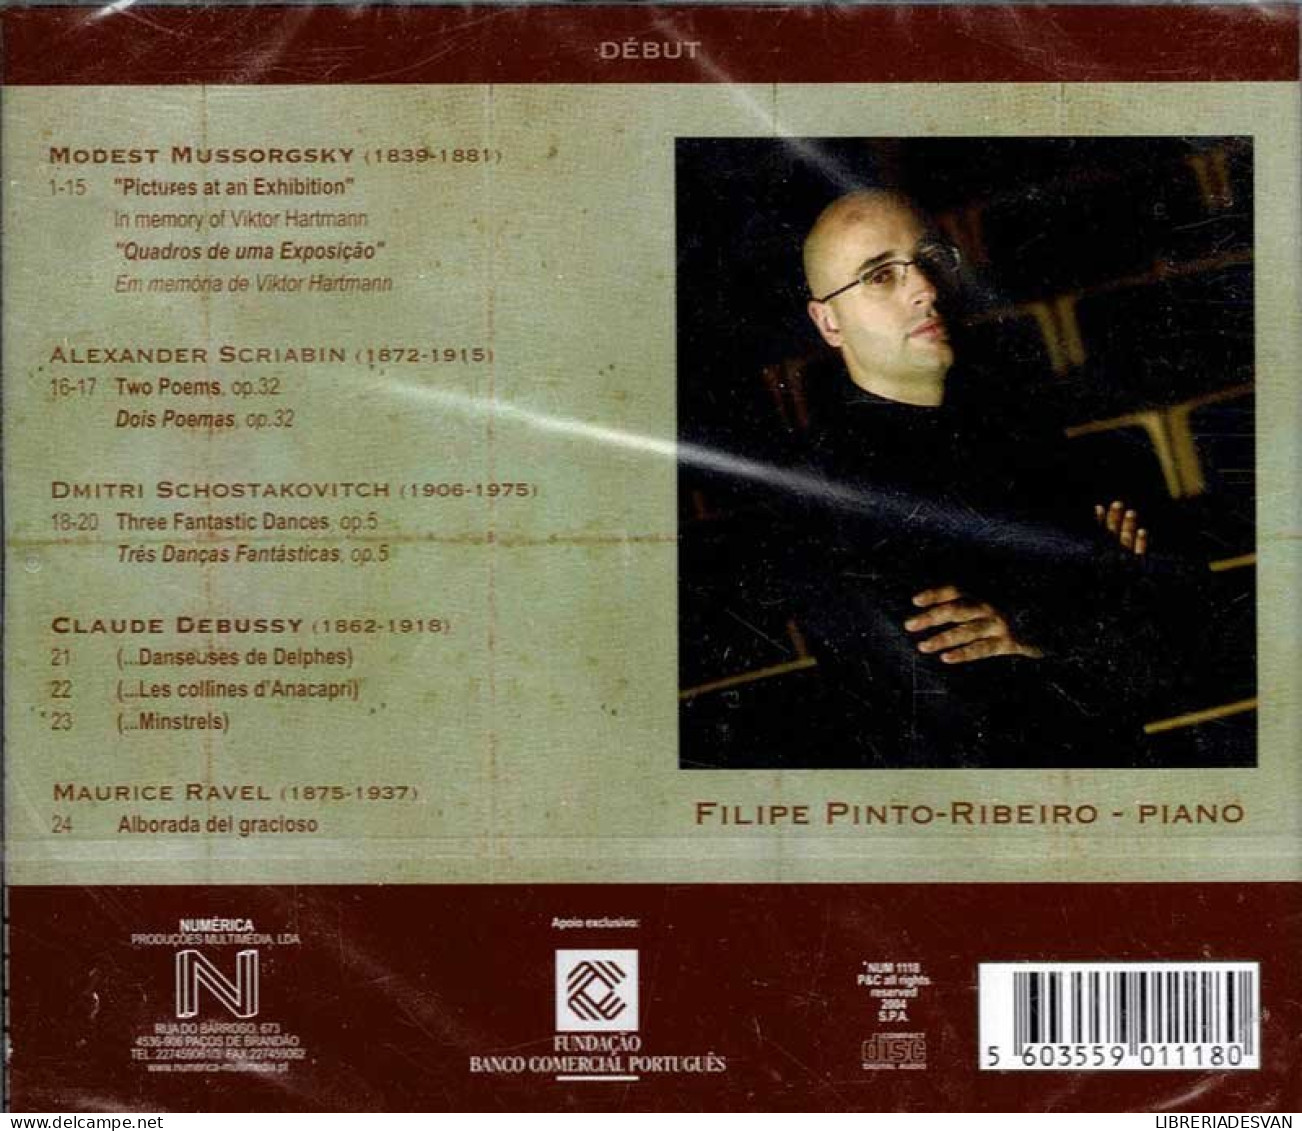 Filipe Pinto-Ribeiro - Début. CD - Clásica